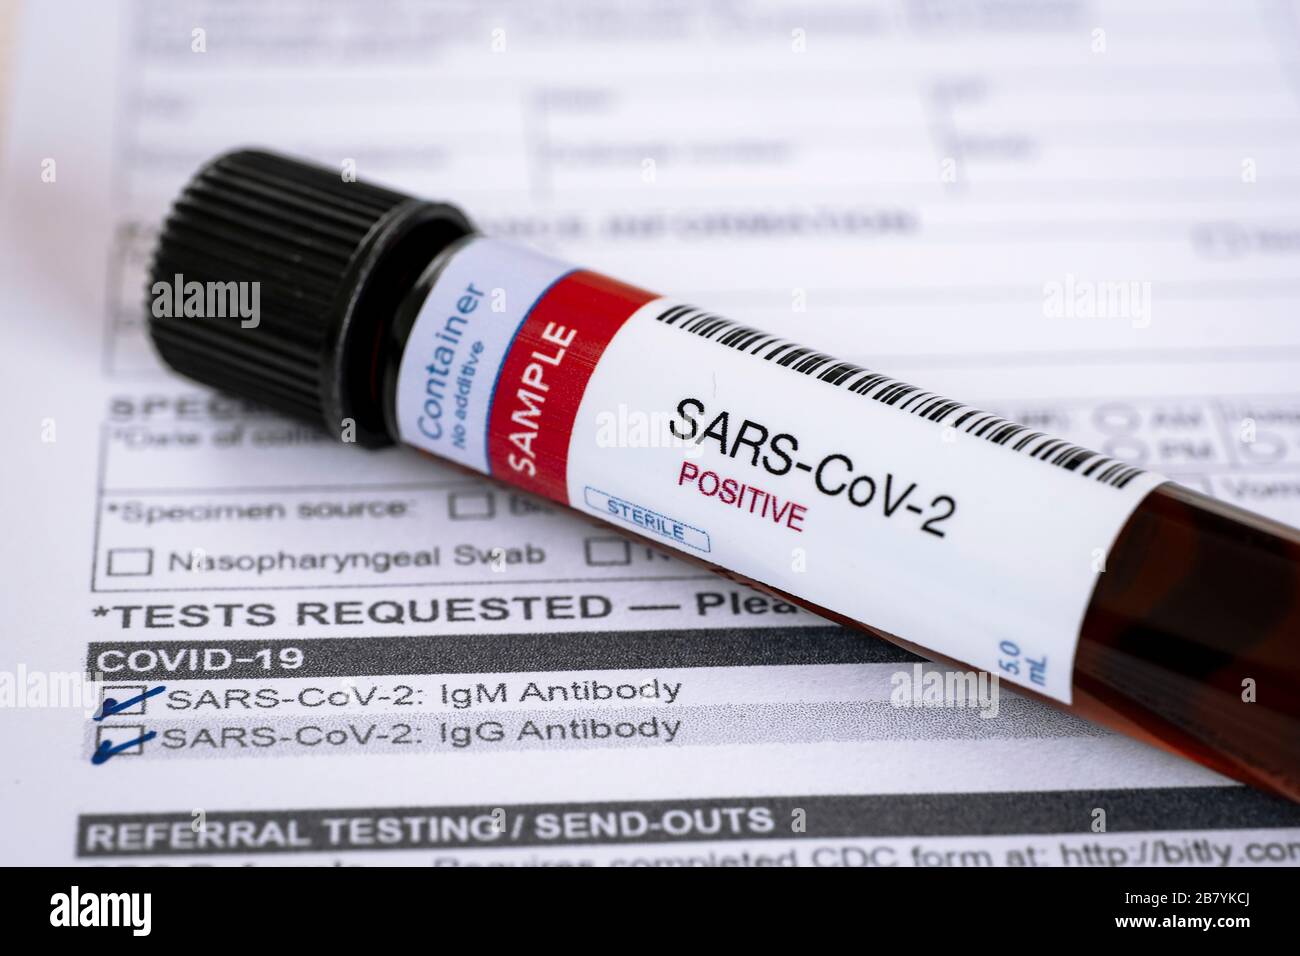 Test de présence de coronavirus. Tube contenant un échantillon de sang qui a testé positif pour COVID-19. Formulaire de test en arrière-plan. Banque D'Images